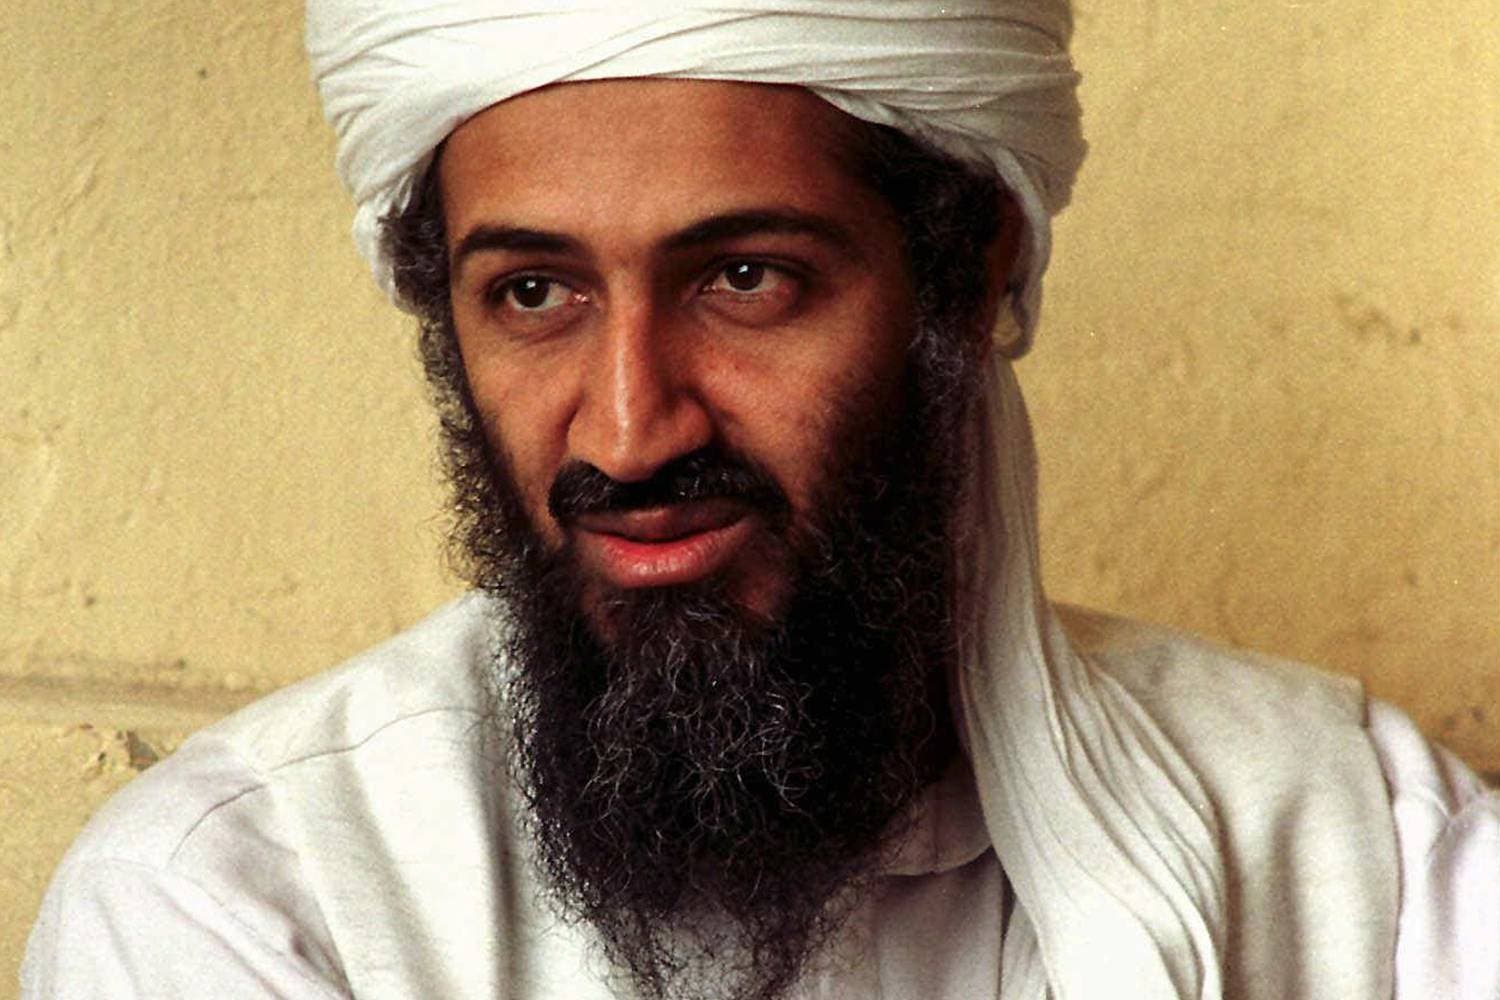 El terrorista de Niza guardaba fotos de Bin Laden y de violencia yihadista